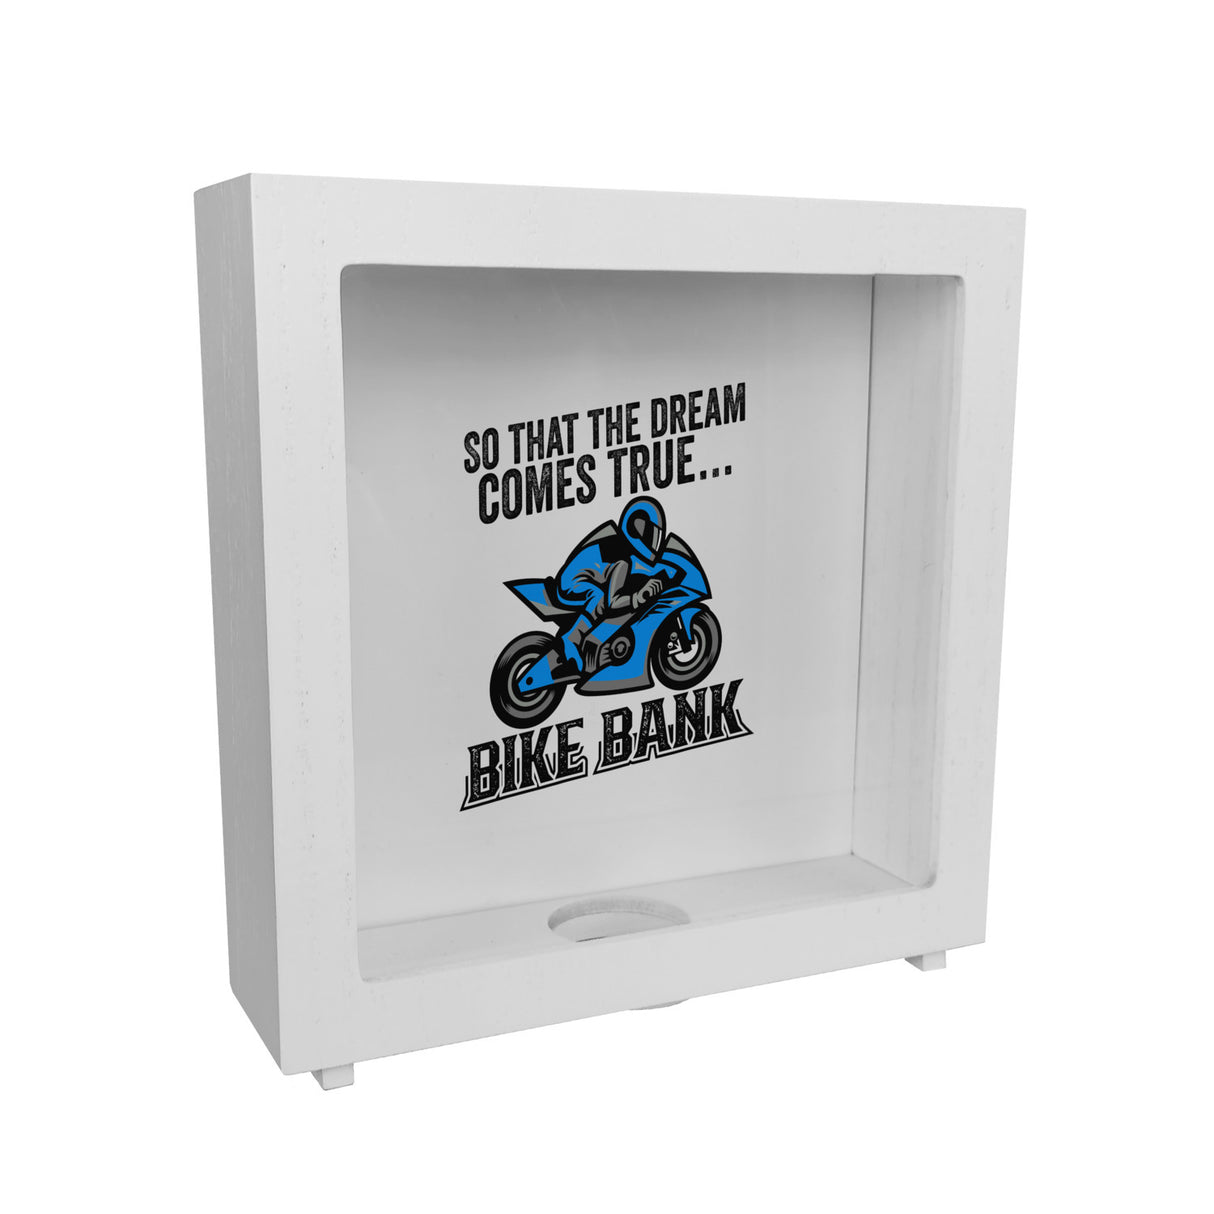 Bike Bank Spardose mit Spruch und Motorrad